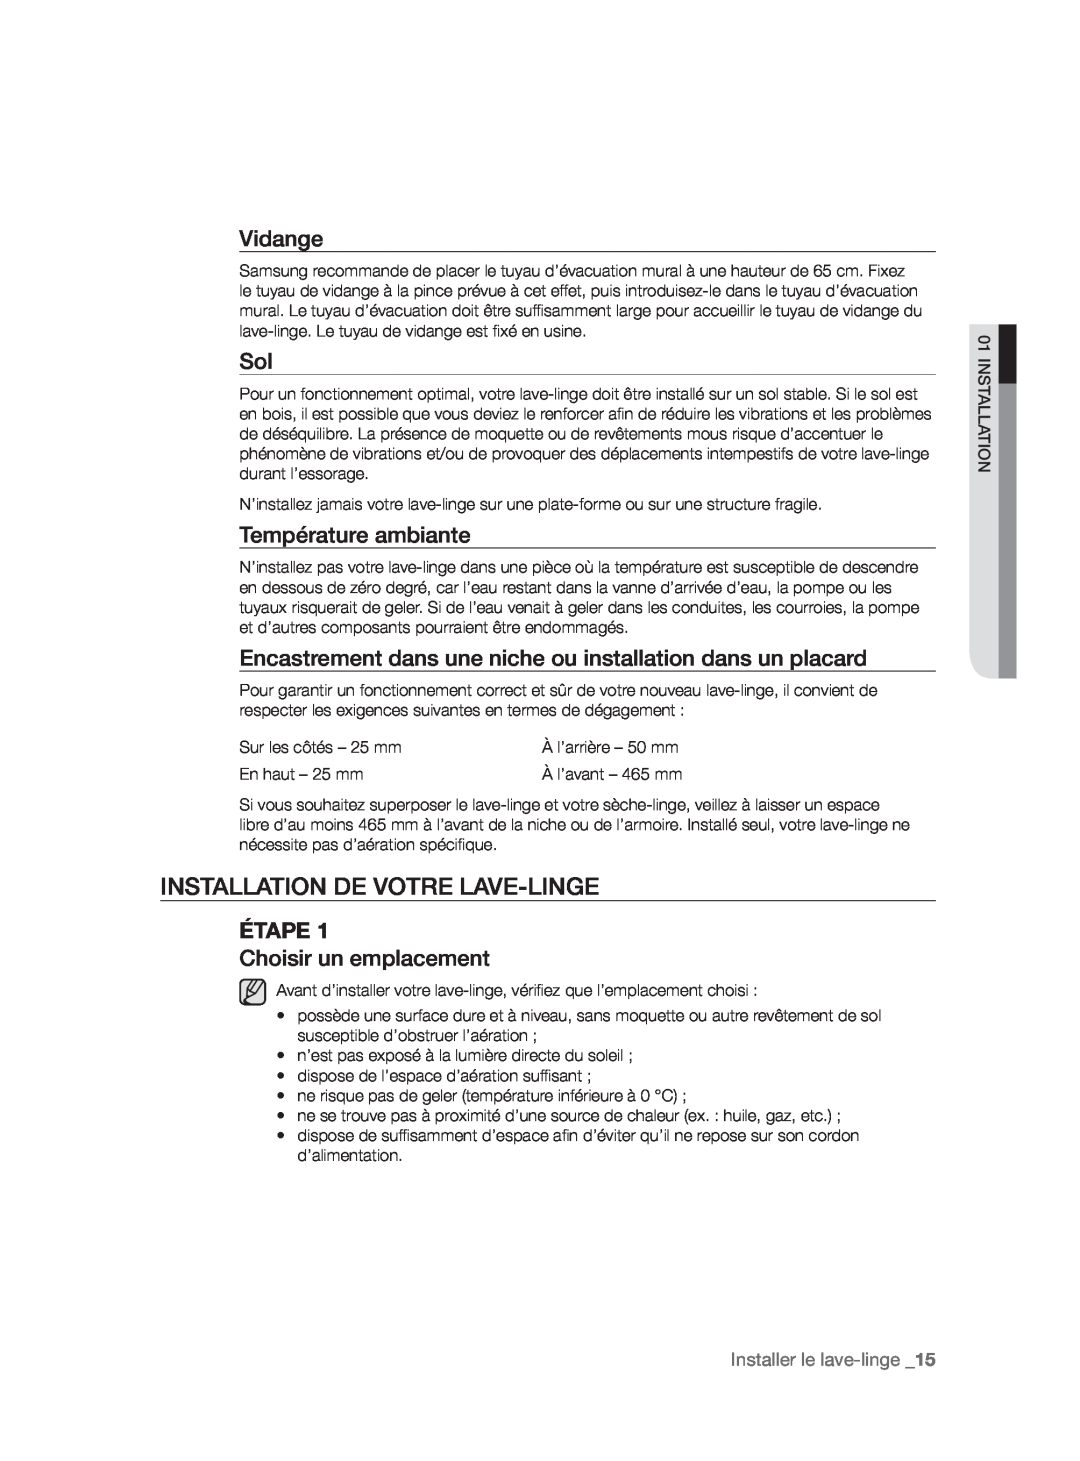 Samsung WF9904AWE/XEF manual Installation De Votre Lave-Linge, Vidange, Température ambiante, Étape, Choisir un emplacement 